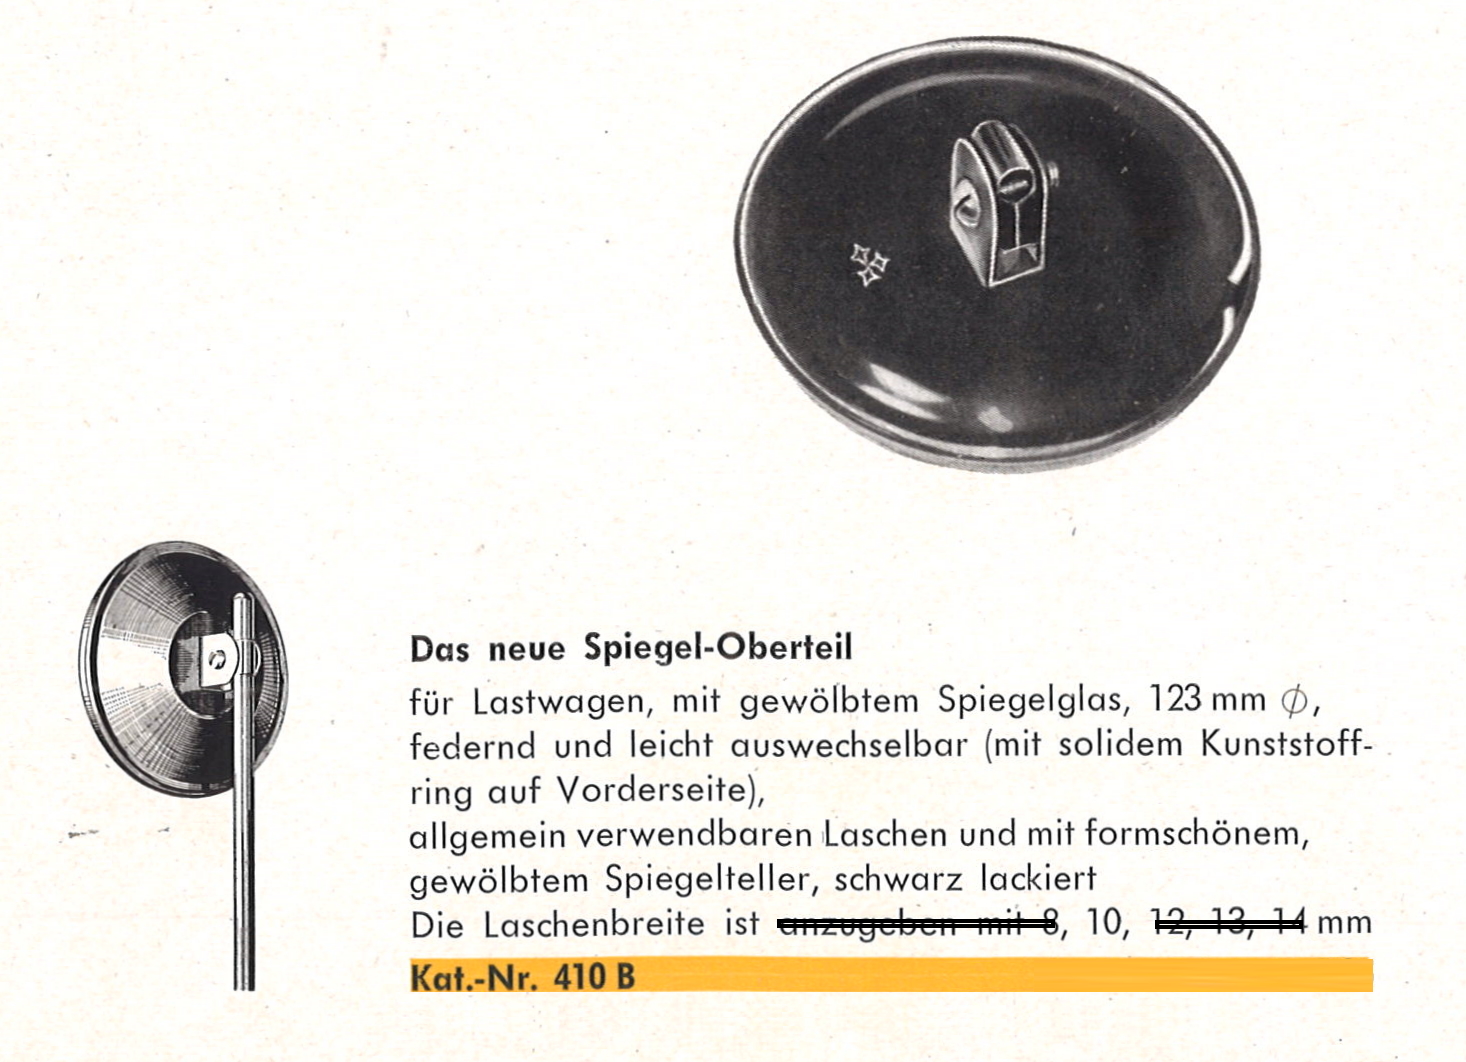 Spiegelkopf Metall rund Ø123mm schwarz lackiert für Lastkraftwagen und Omnibusse